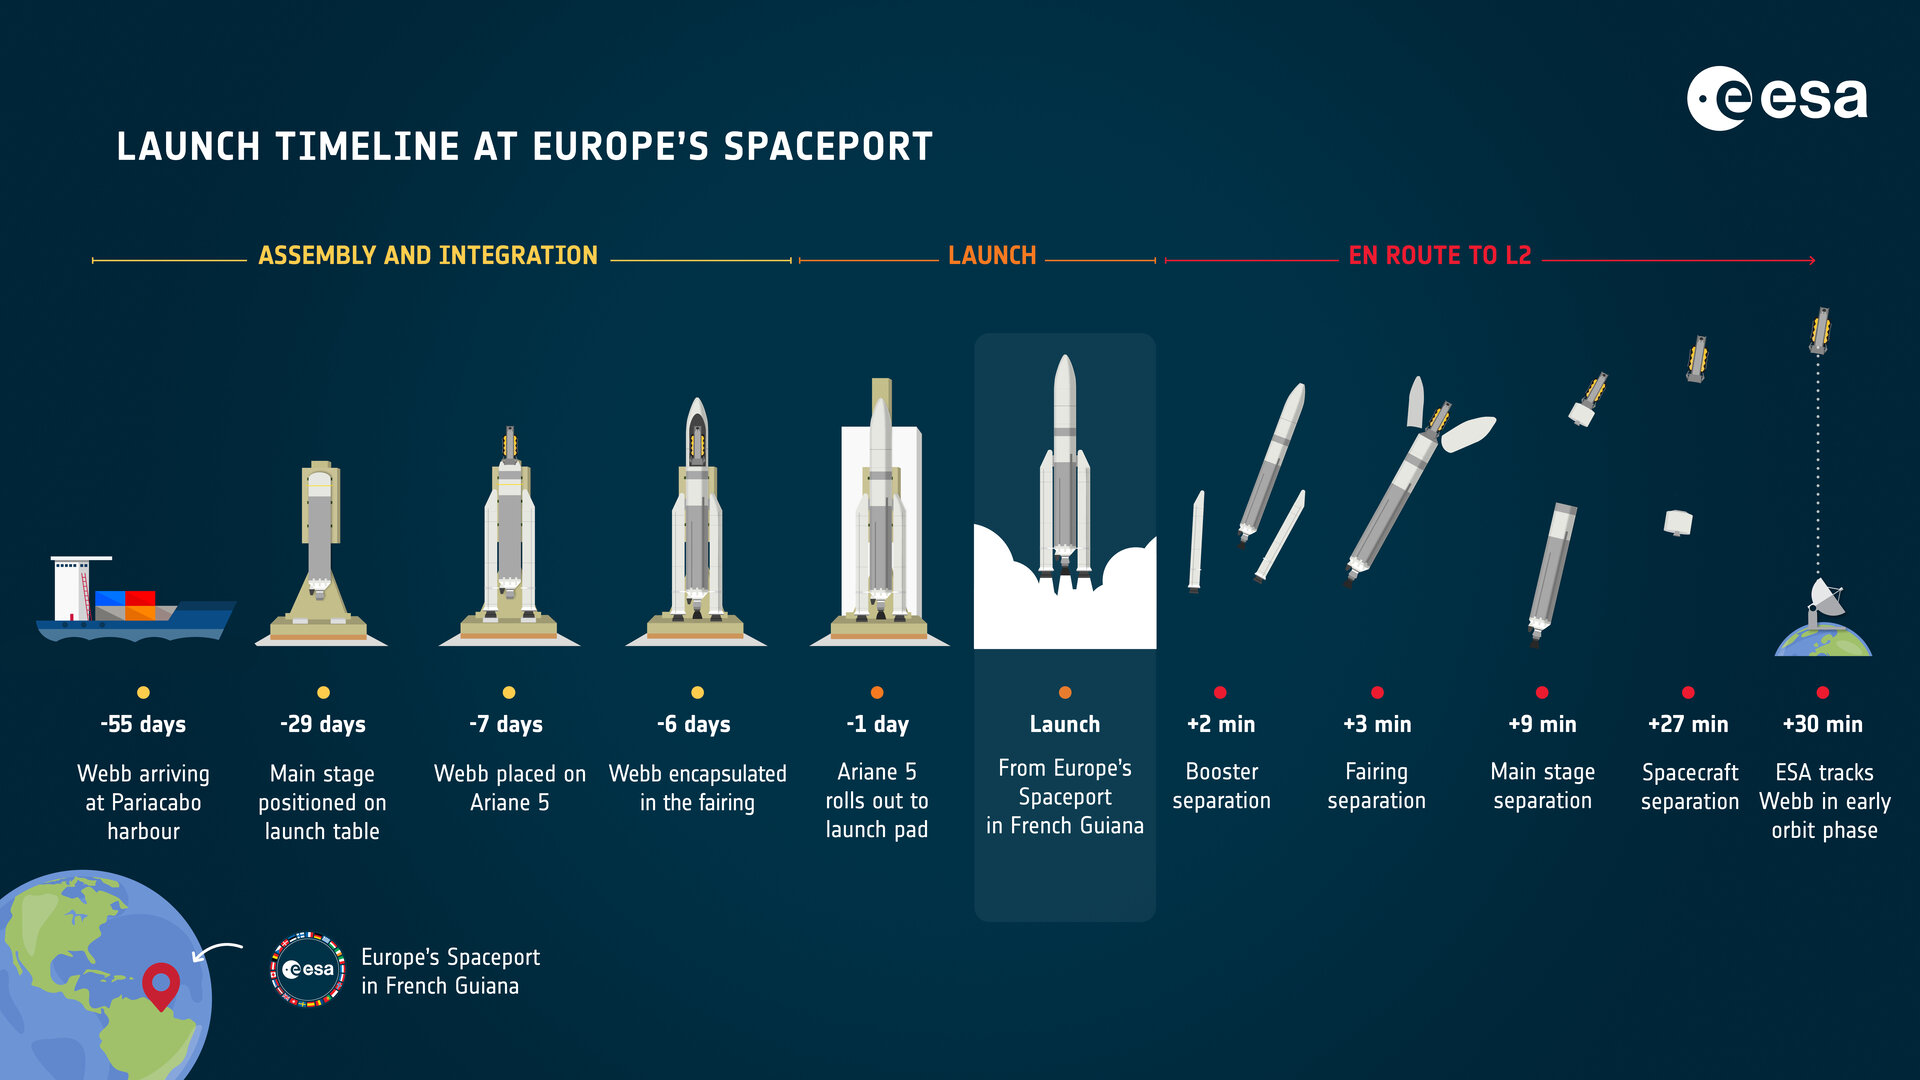 webb_launch_timeline_at_europe_s_spaceport_pillars.jpg